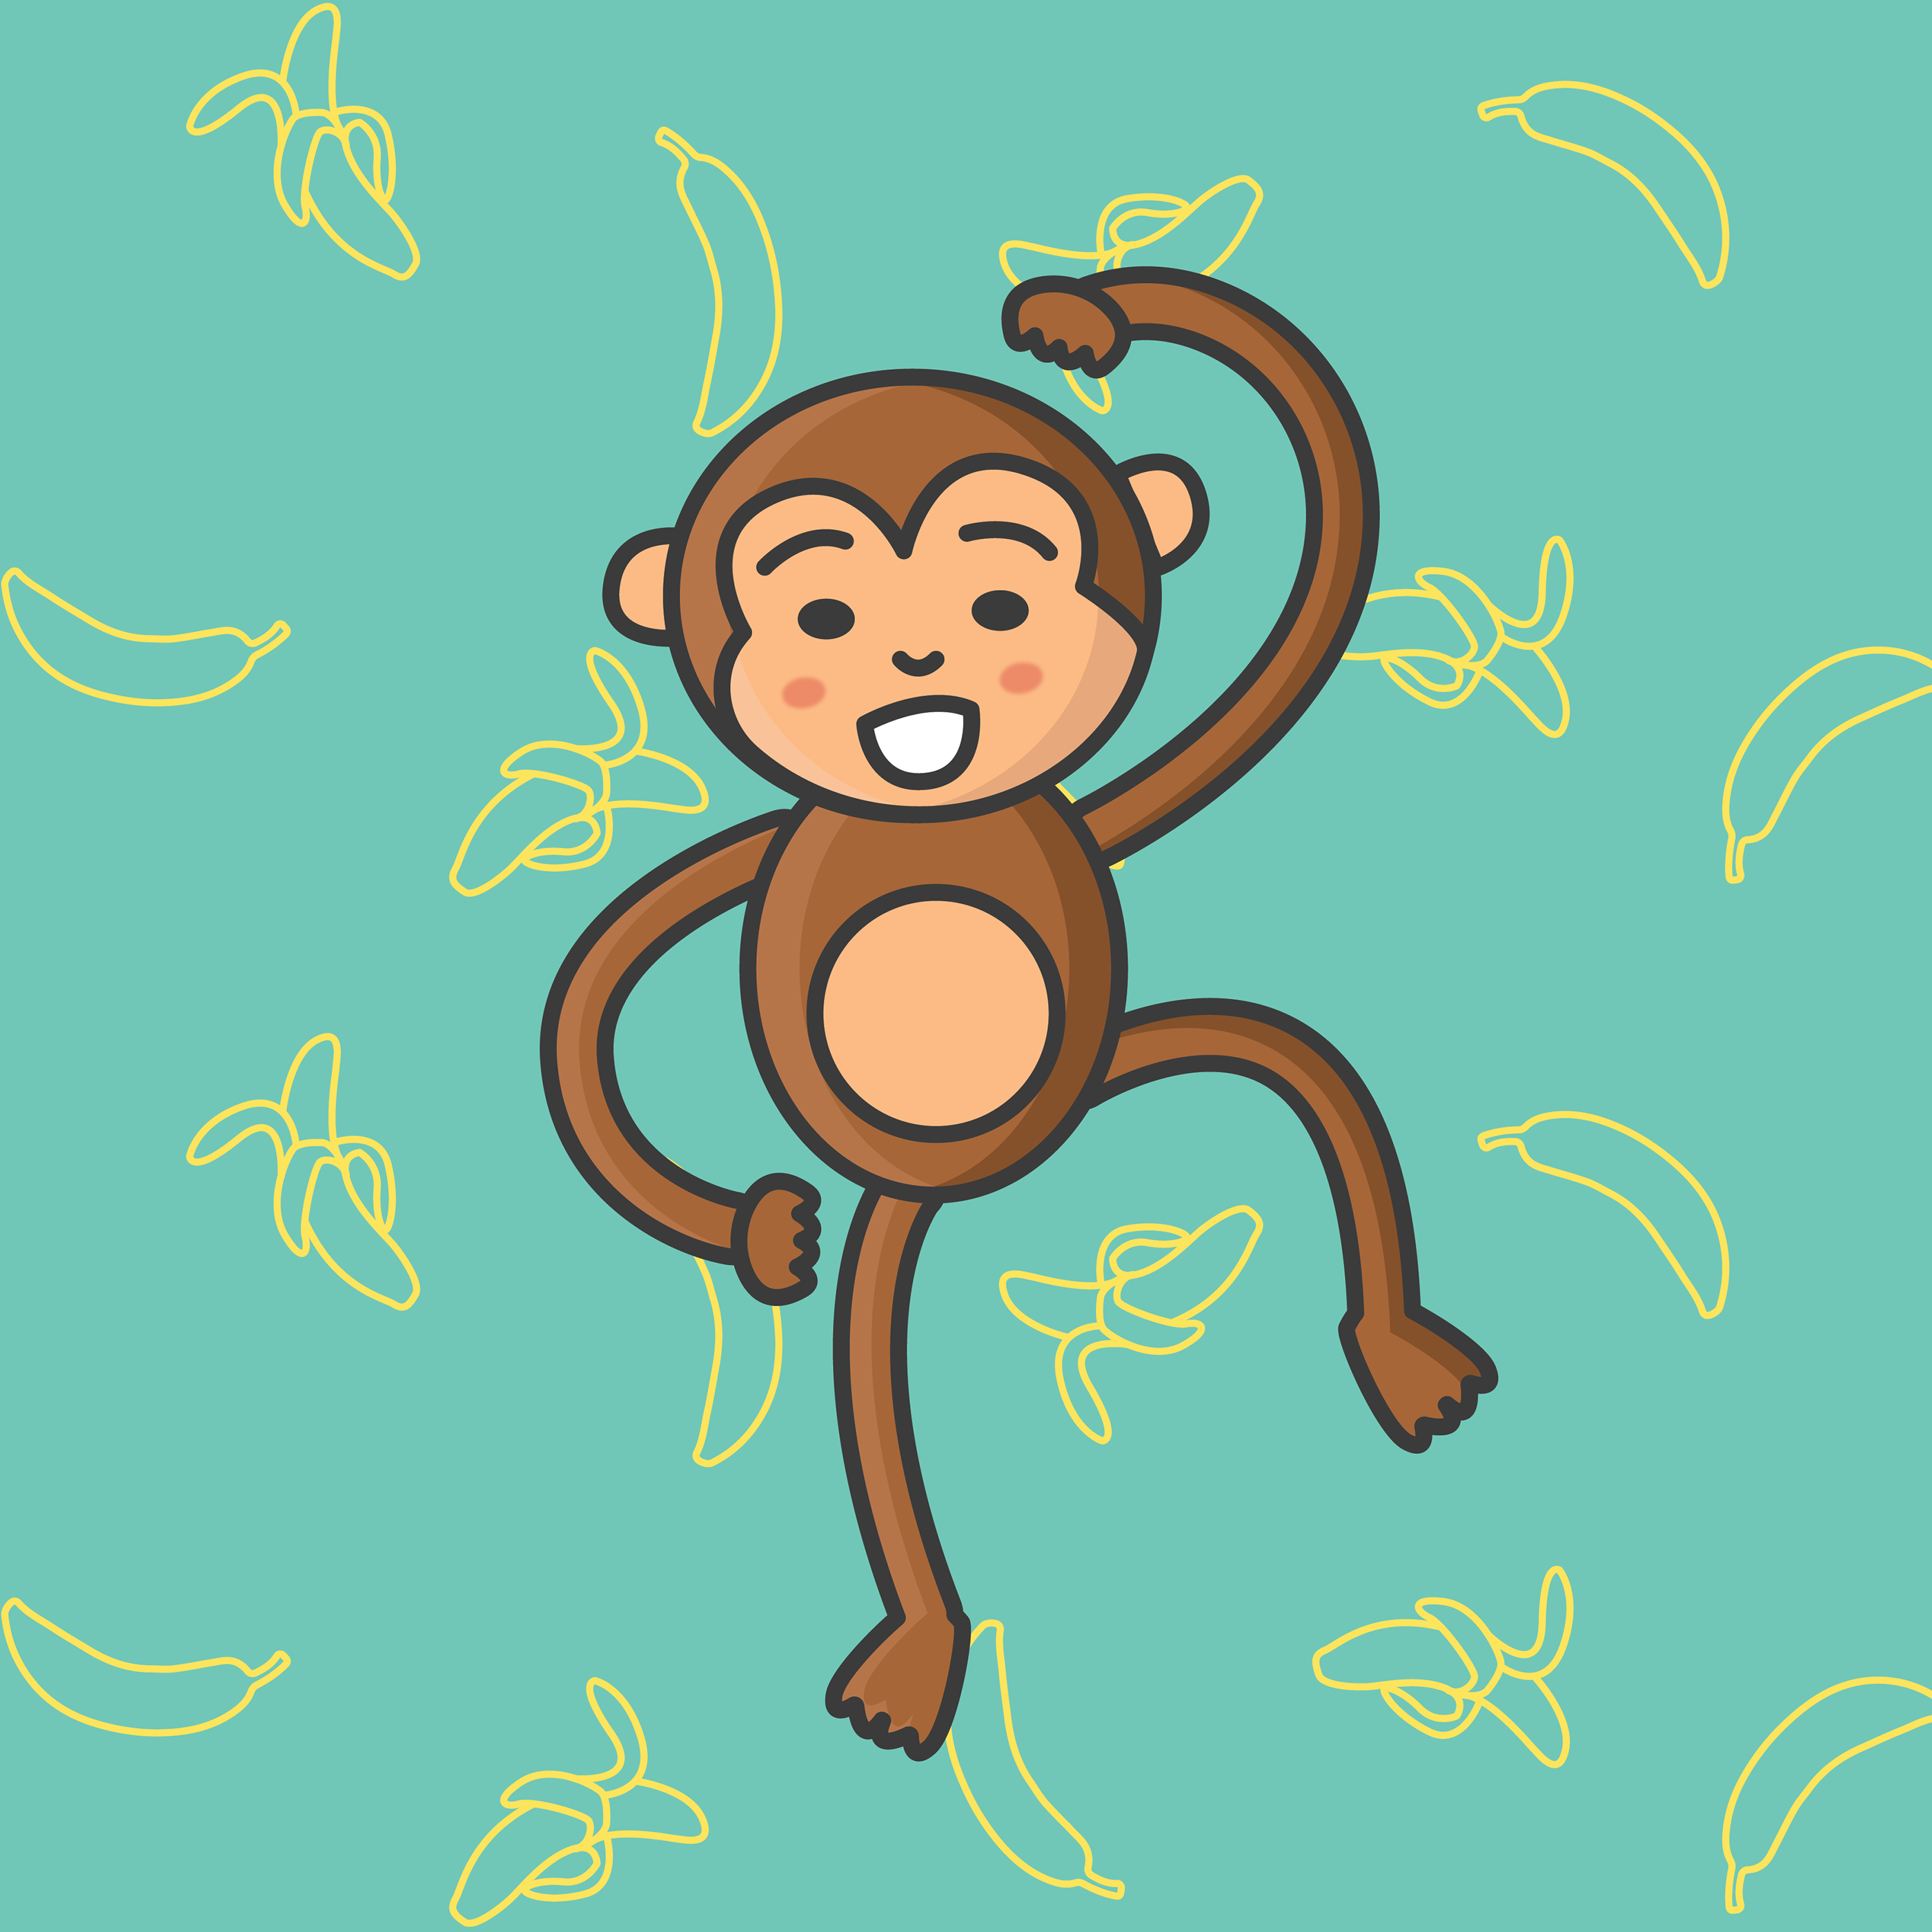 68 год обезьяны. Обезьяна рисунок. Мартышка рисунок. Год обезьяны. Год обезьяны 2016 рисунок.